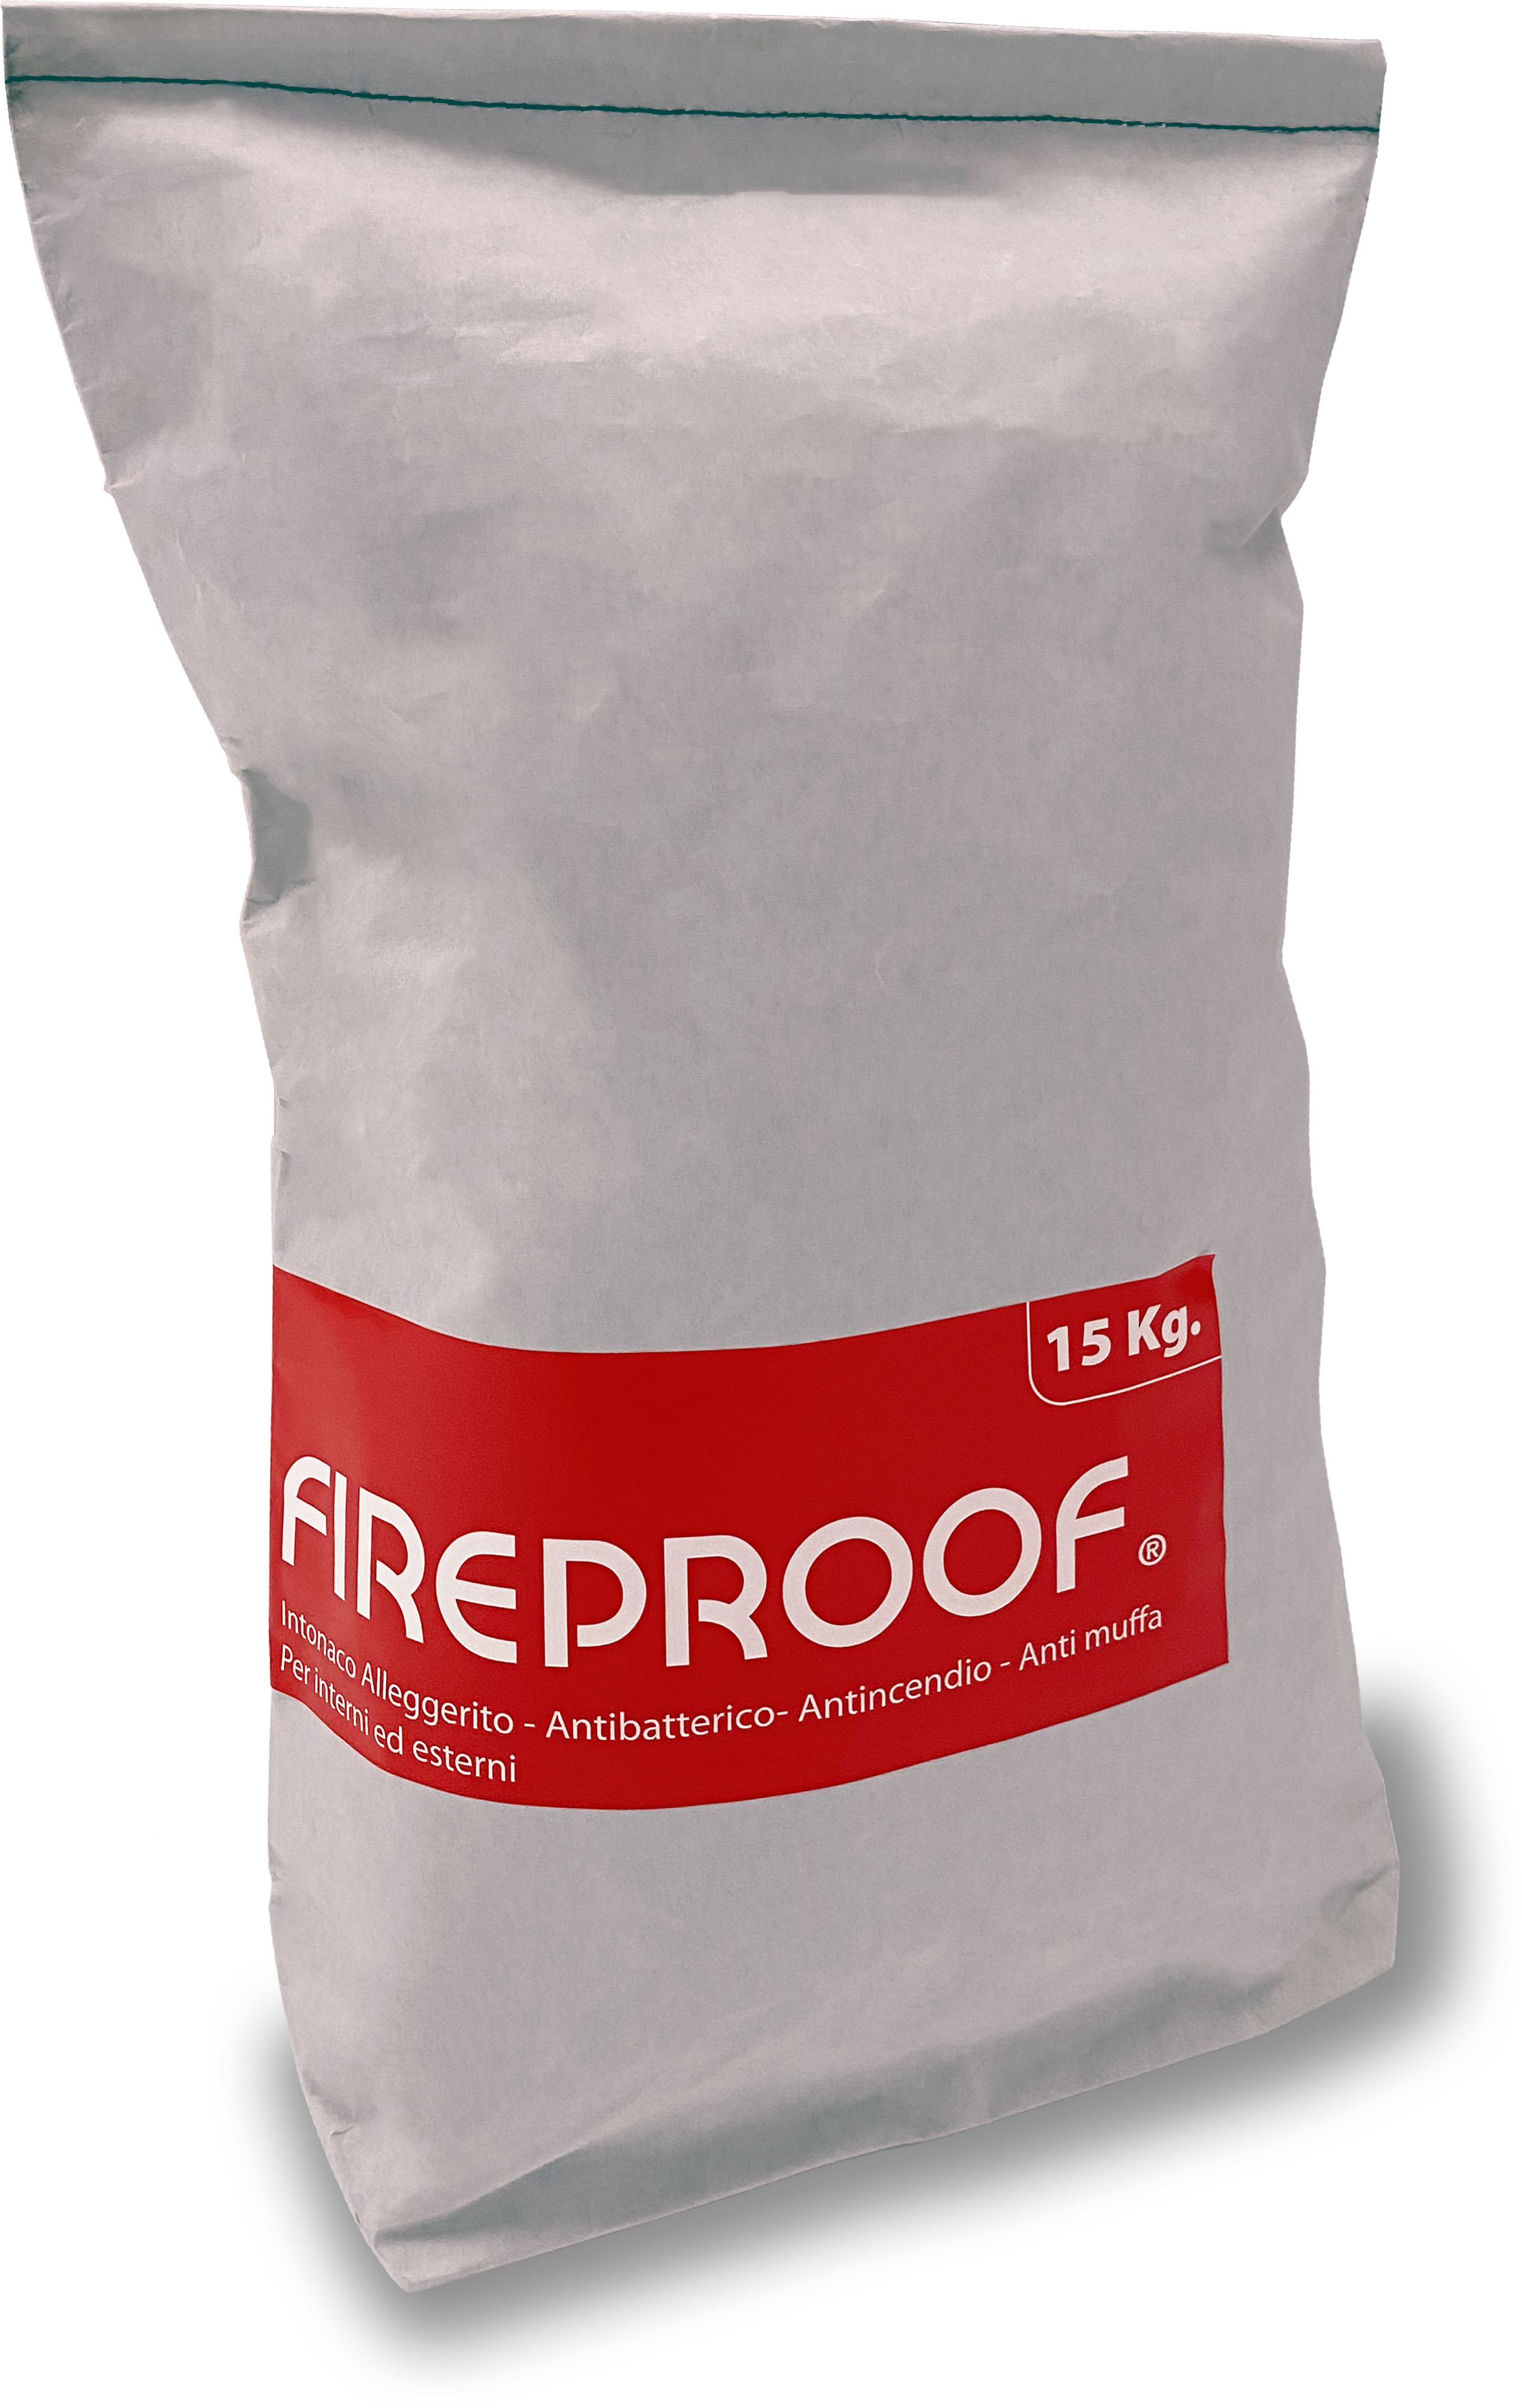 hidra fireproof